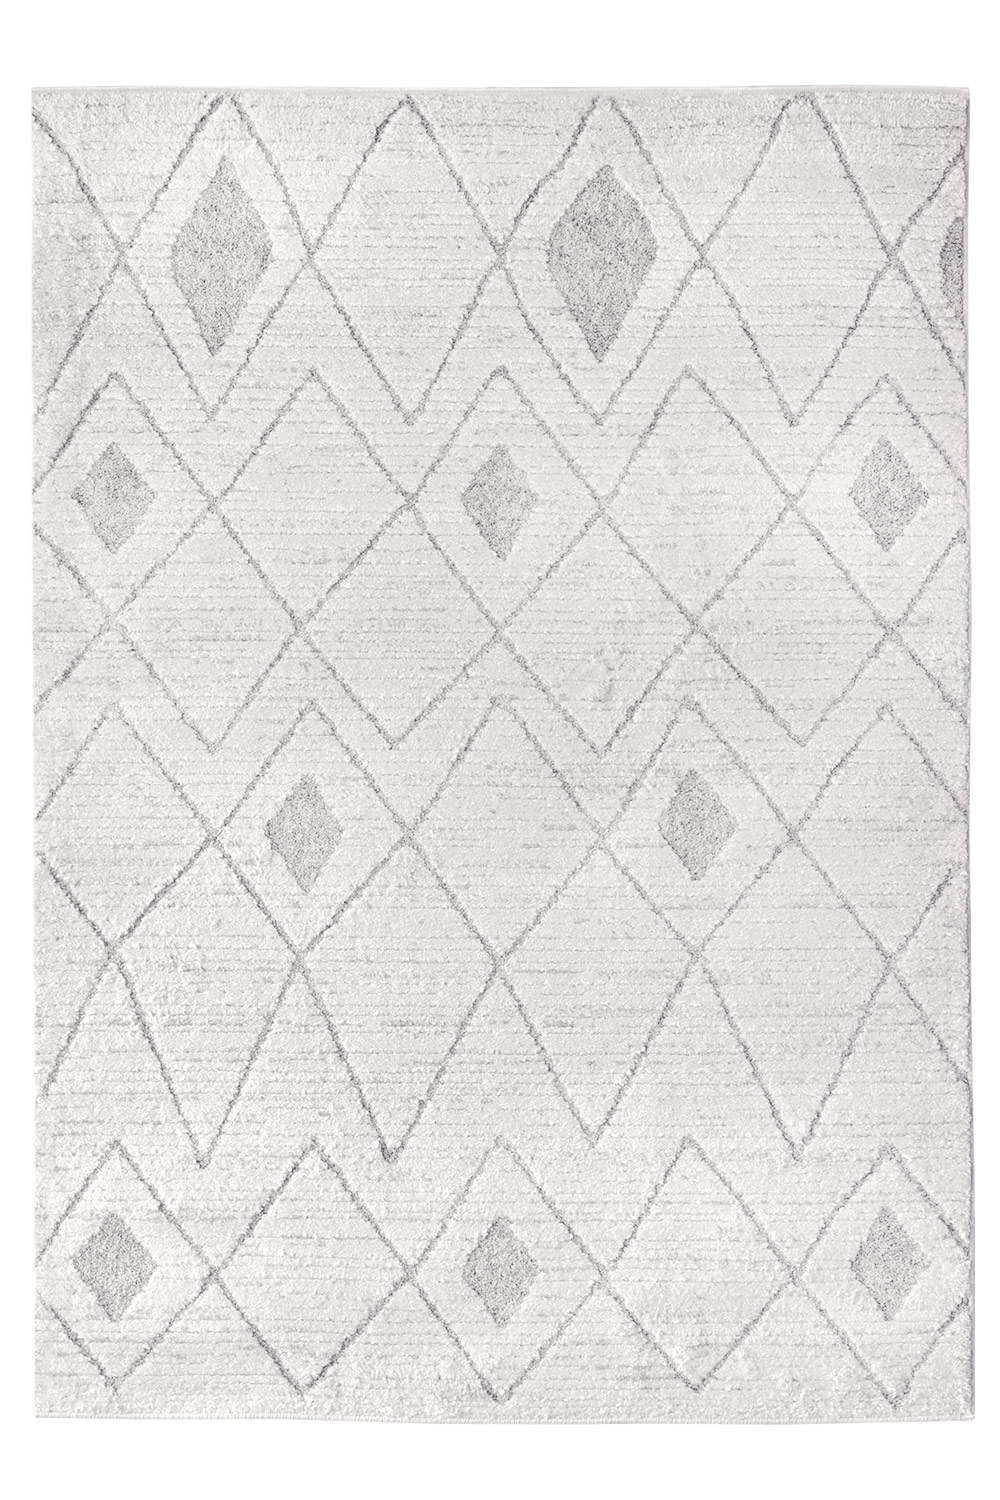 Kusový koberec LUCIA 2255/160 Bílý 160x230 cm